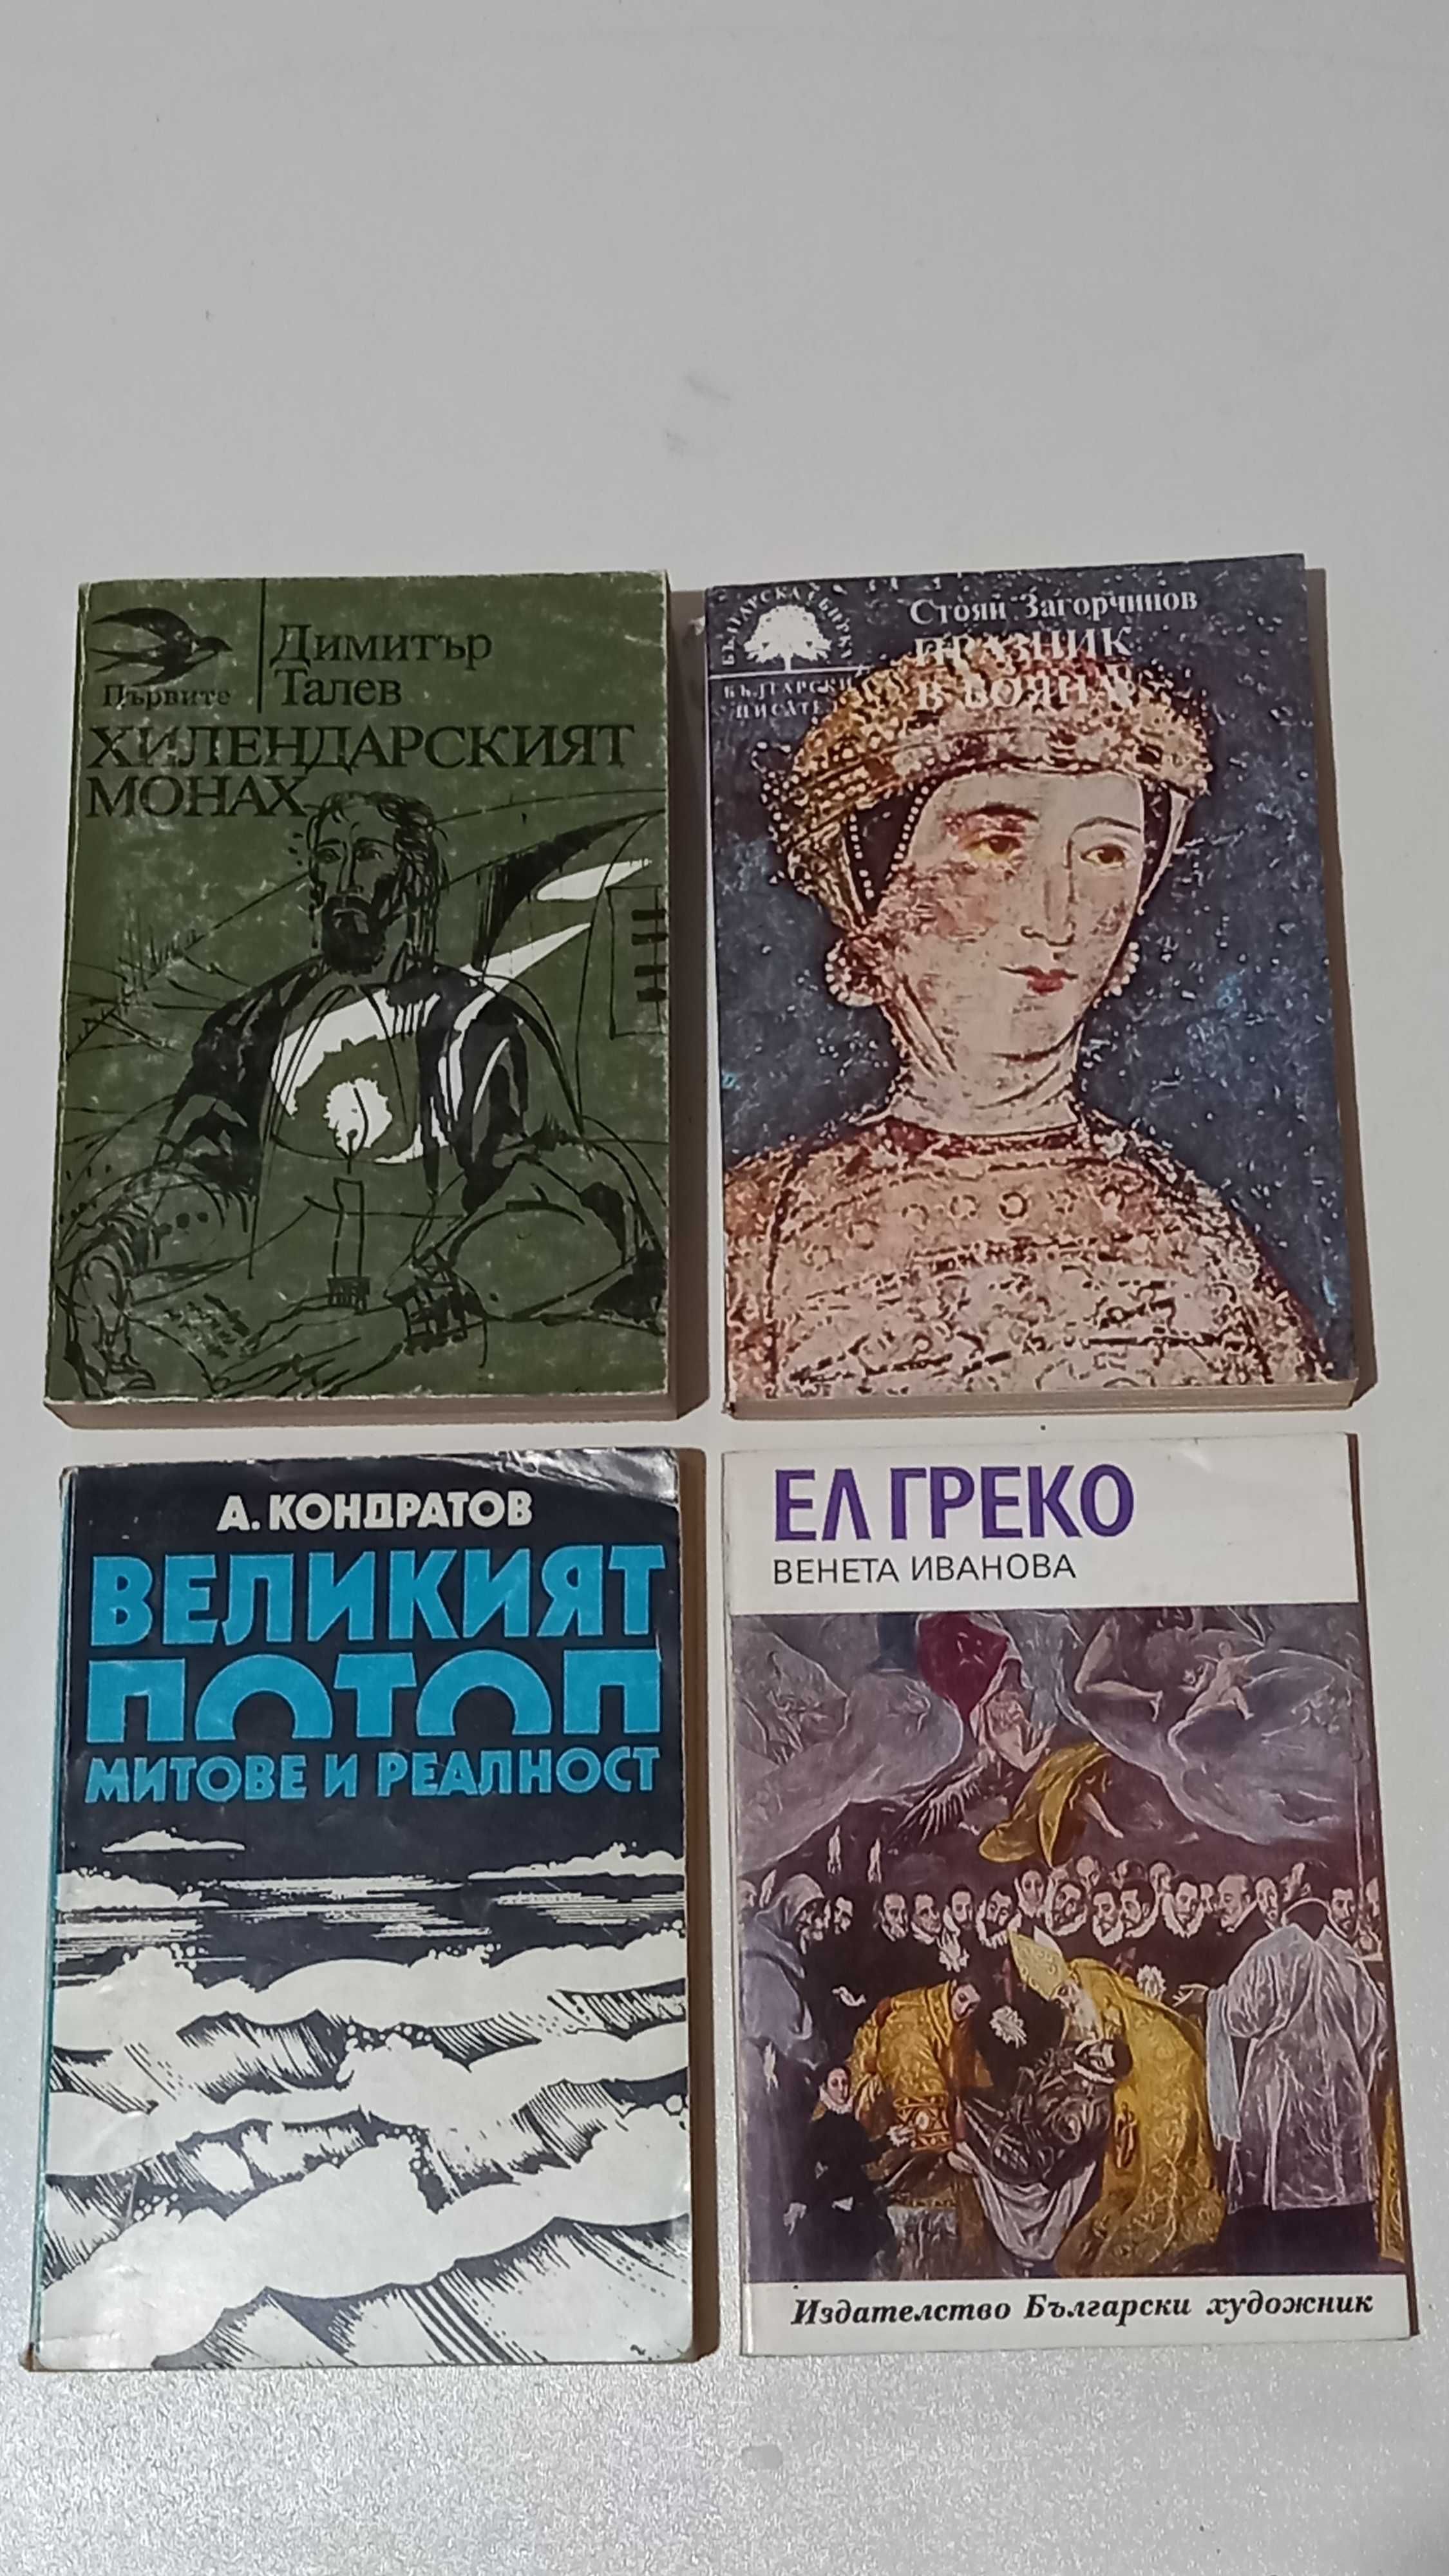 25 Книги от български автори ,по 1 лв. и 1,50 лв. (списък)